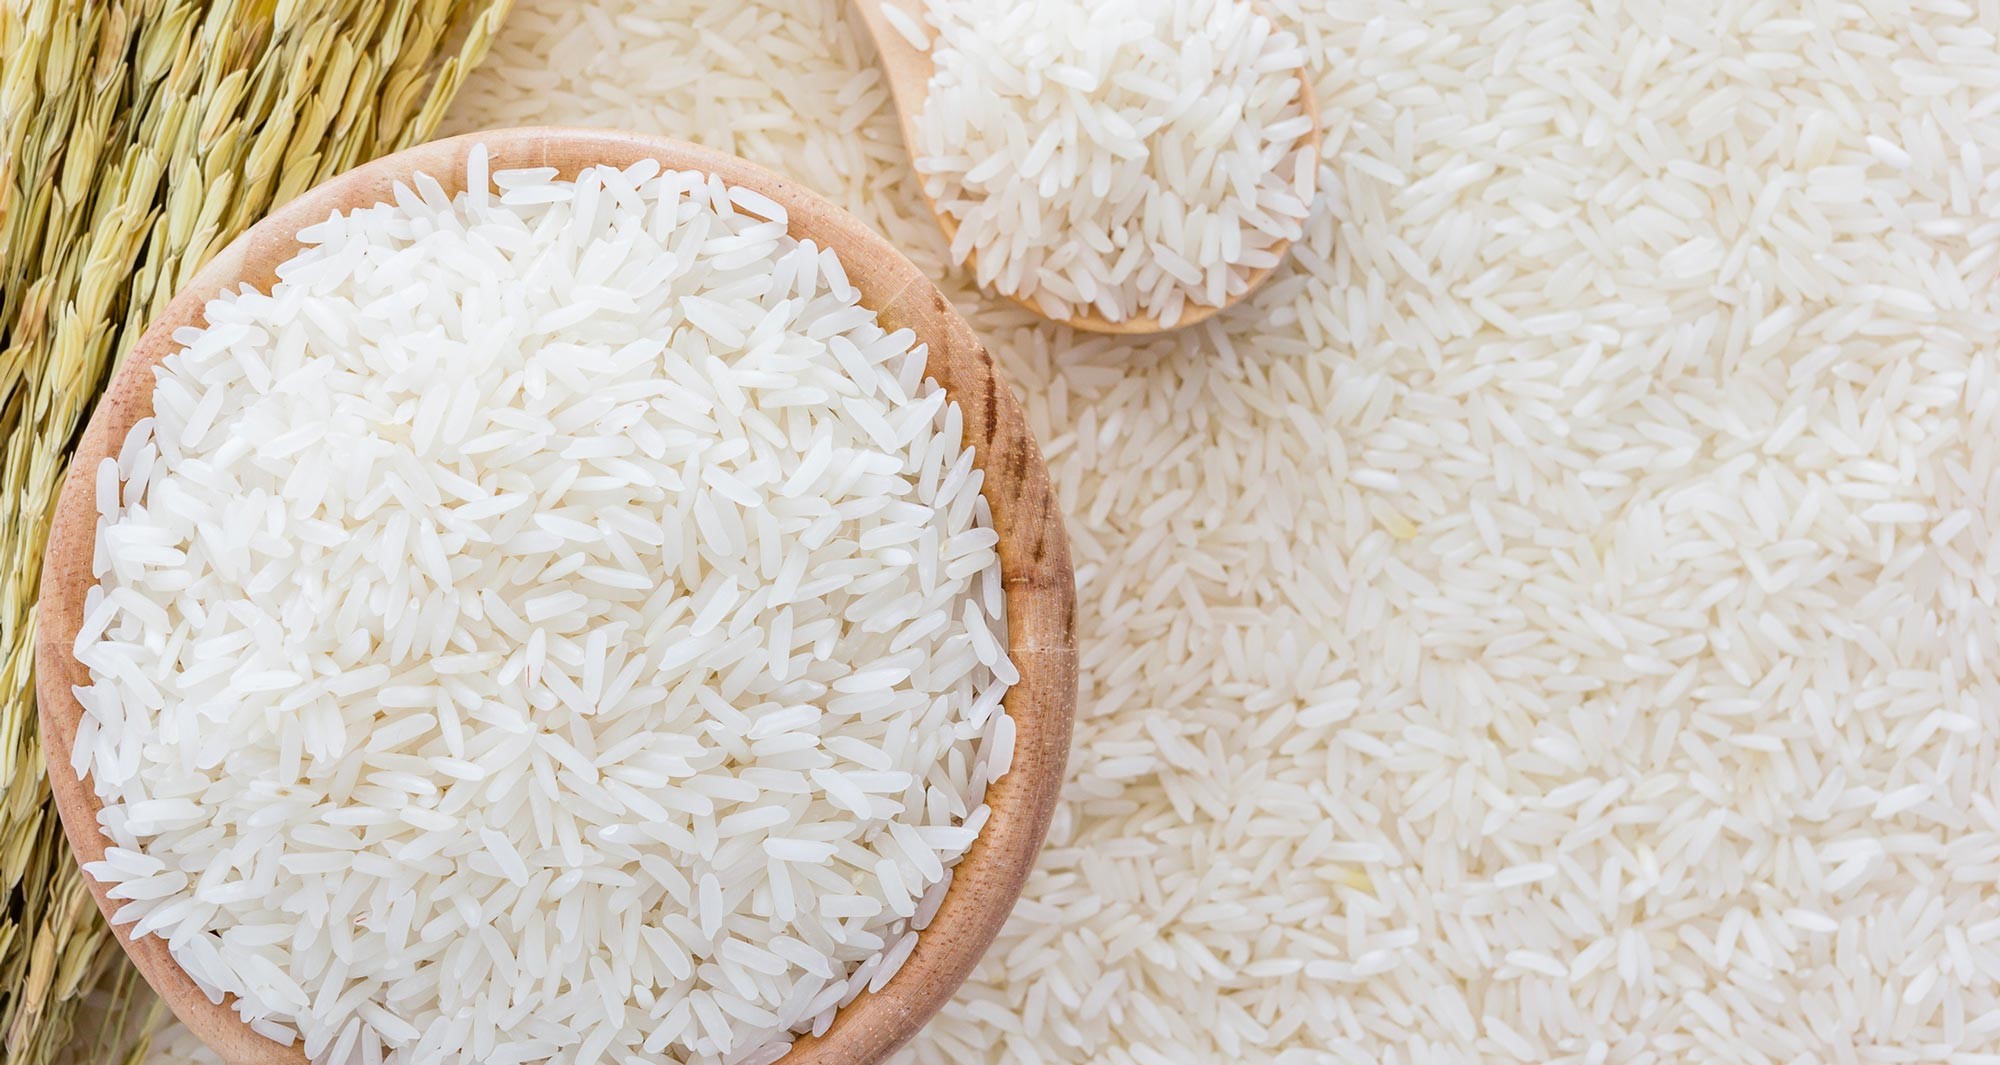 Gạo trắng cung cấp một lượng lớn tuyệt vời khoáng chất Folate